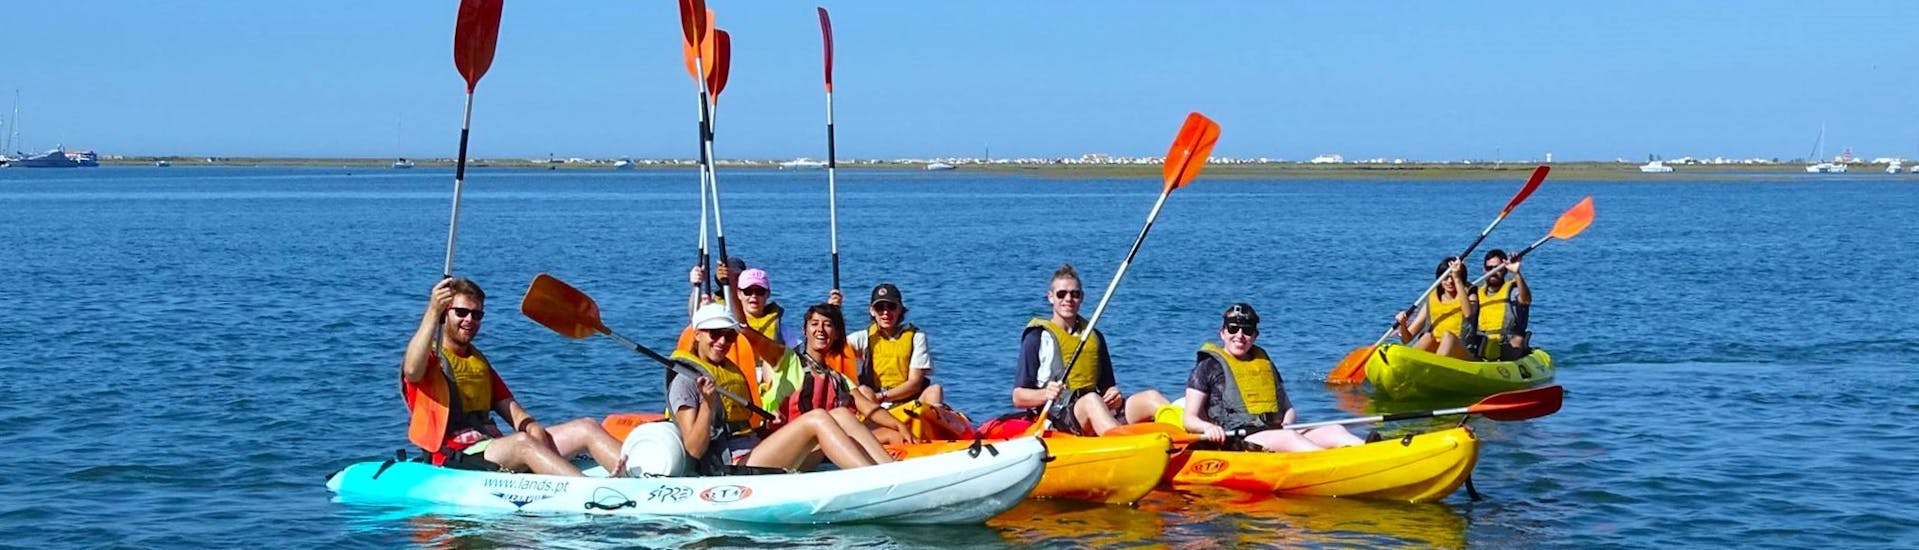 Een groep deelnemers peddelt op een zonnige dag over de Ria Formosa tijdens een kajaktocht vanuit Faro met Lands Algarve.